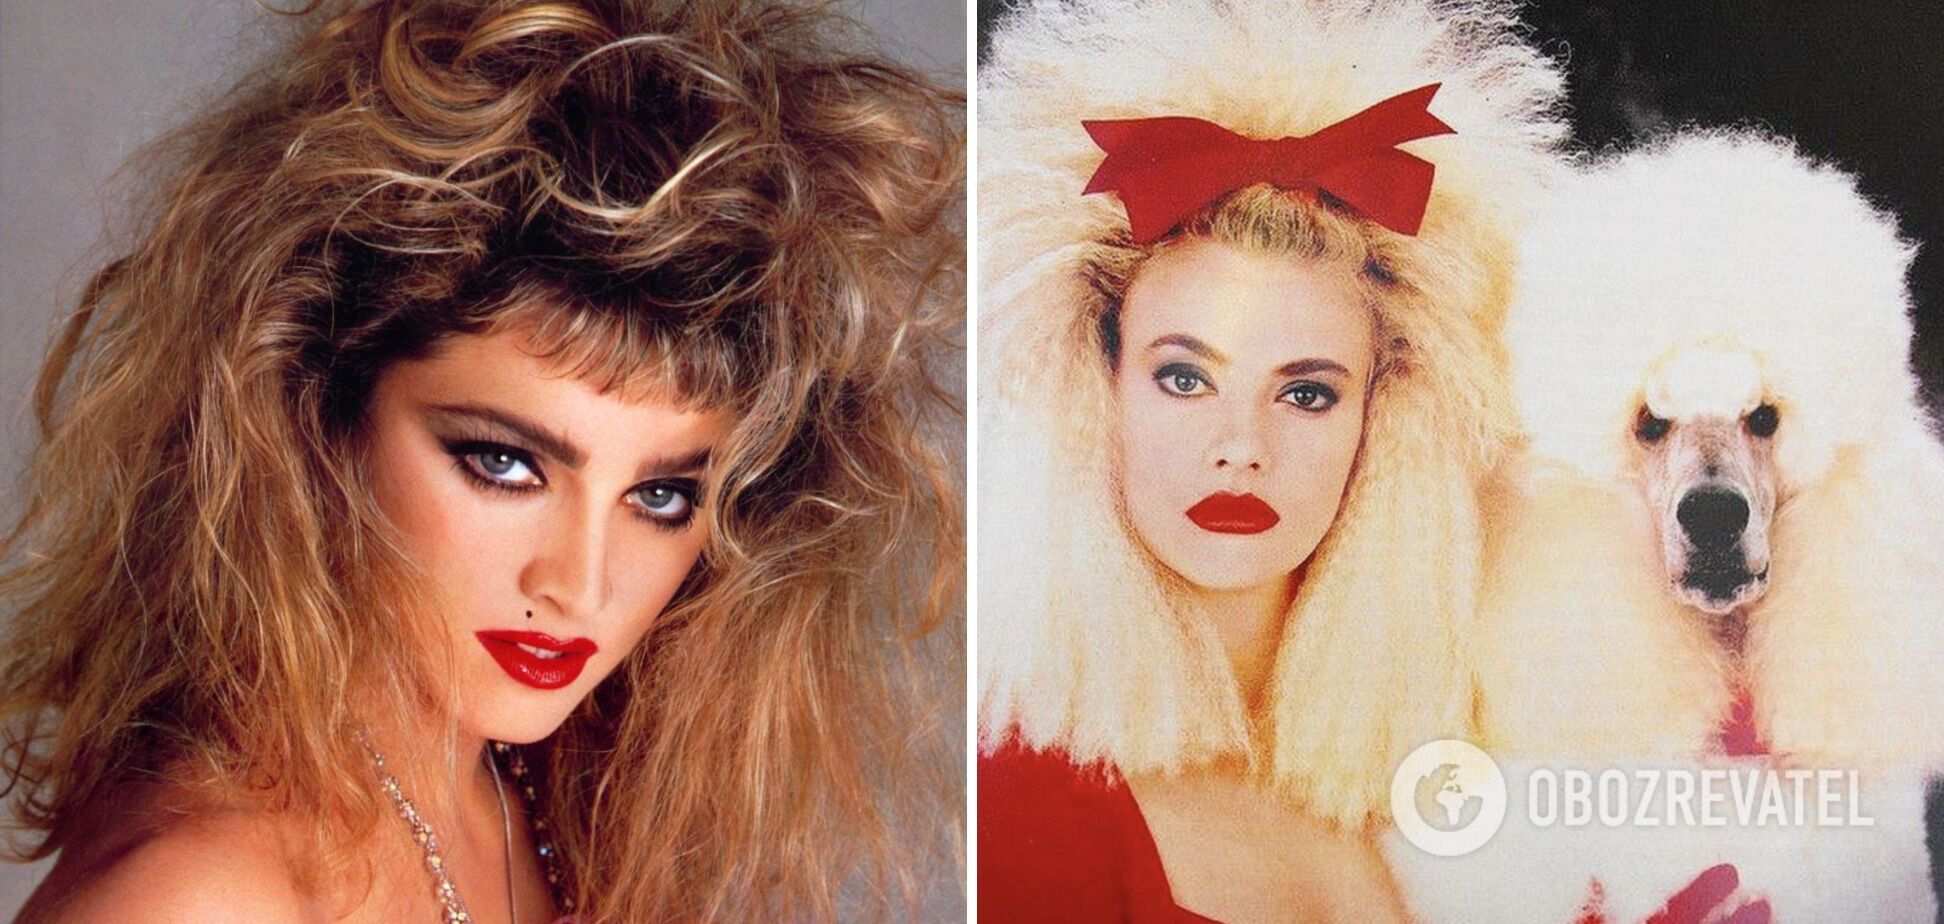 Пережженные волосы и безумный начос носили все девушки в 80-х и 90-х.